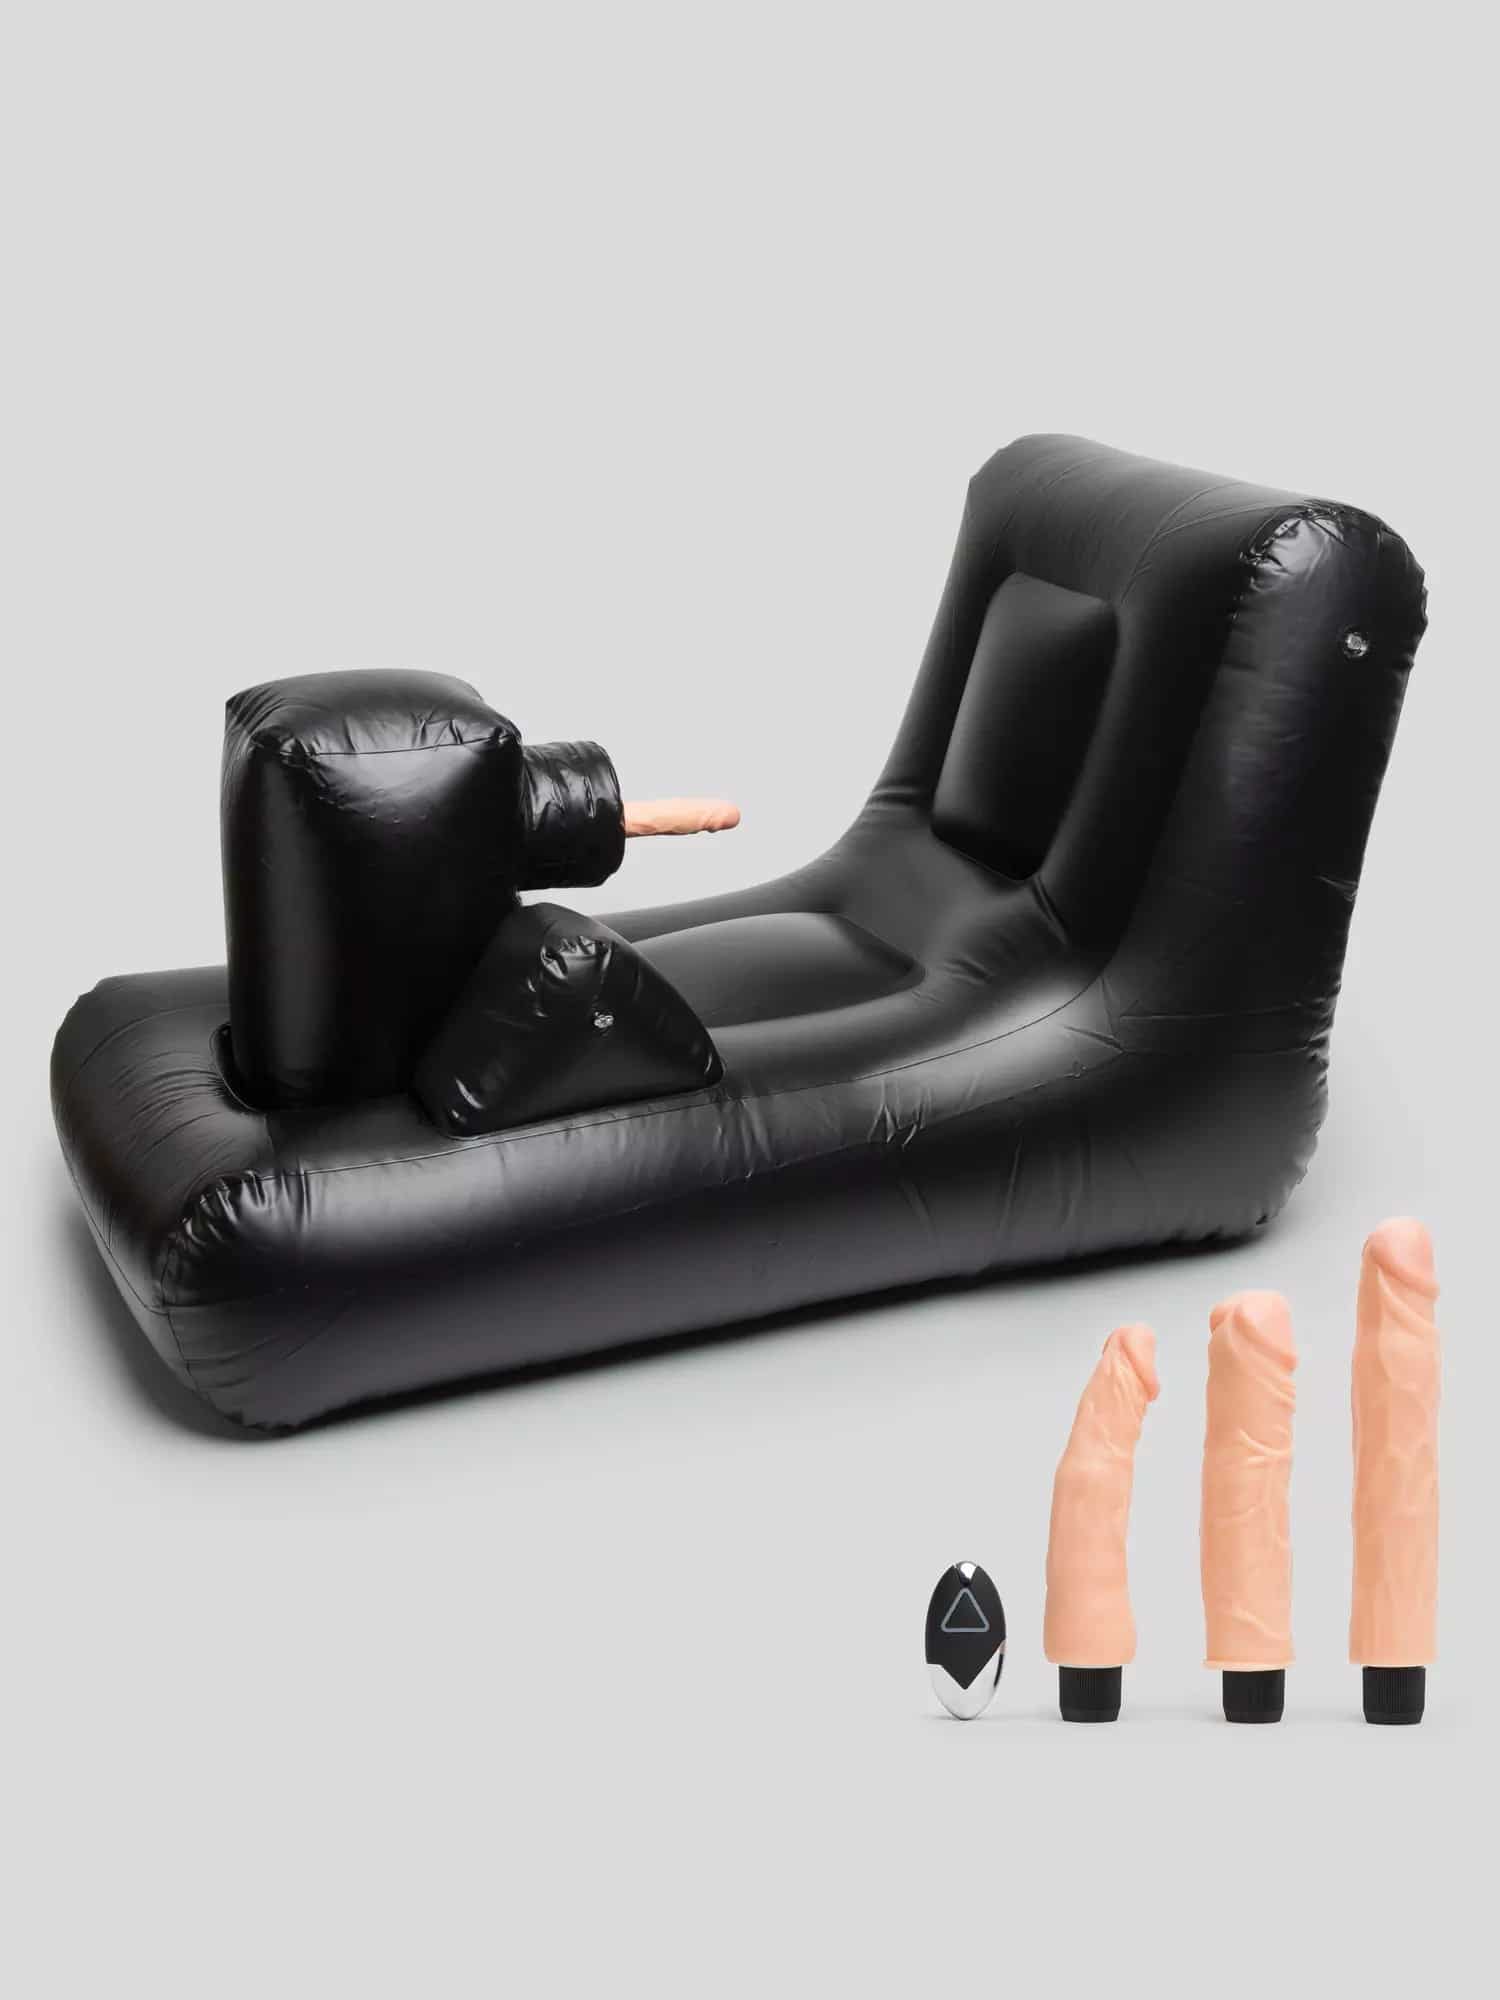 Product Dark Magic Inflatable Remote Control Thrusting Sex Machine